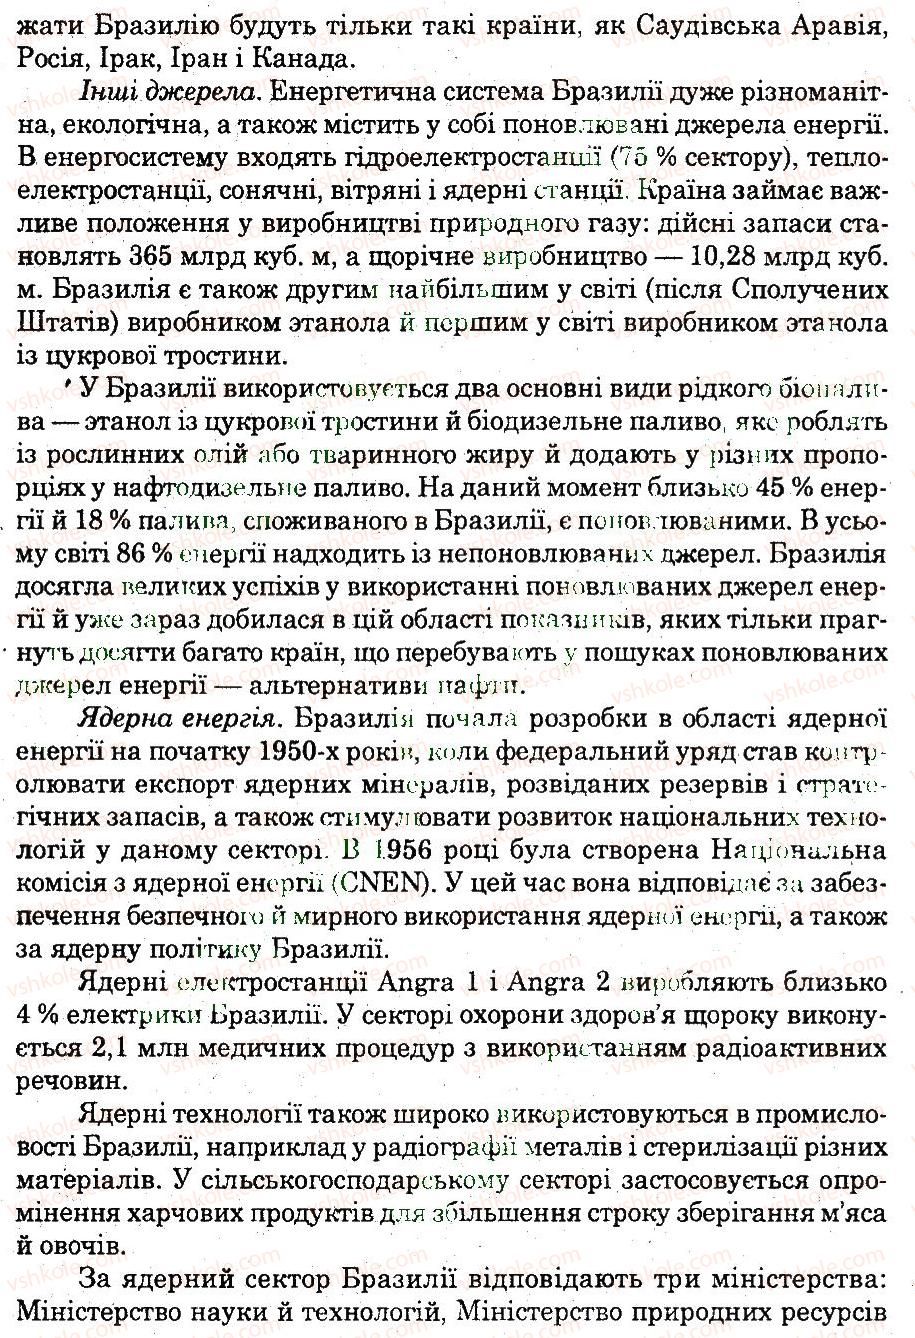 10-geografiya-og-stadnik-vf-vovk-2012-zoshit-dlya-praktichnih-robit--praktichni-roboti-praktichna-robota-2-ДЗ-rnd8041.jpg